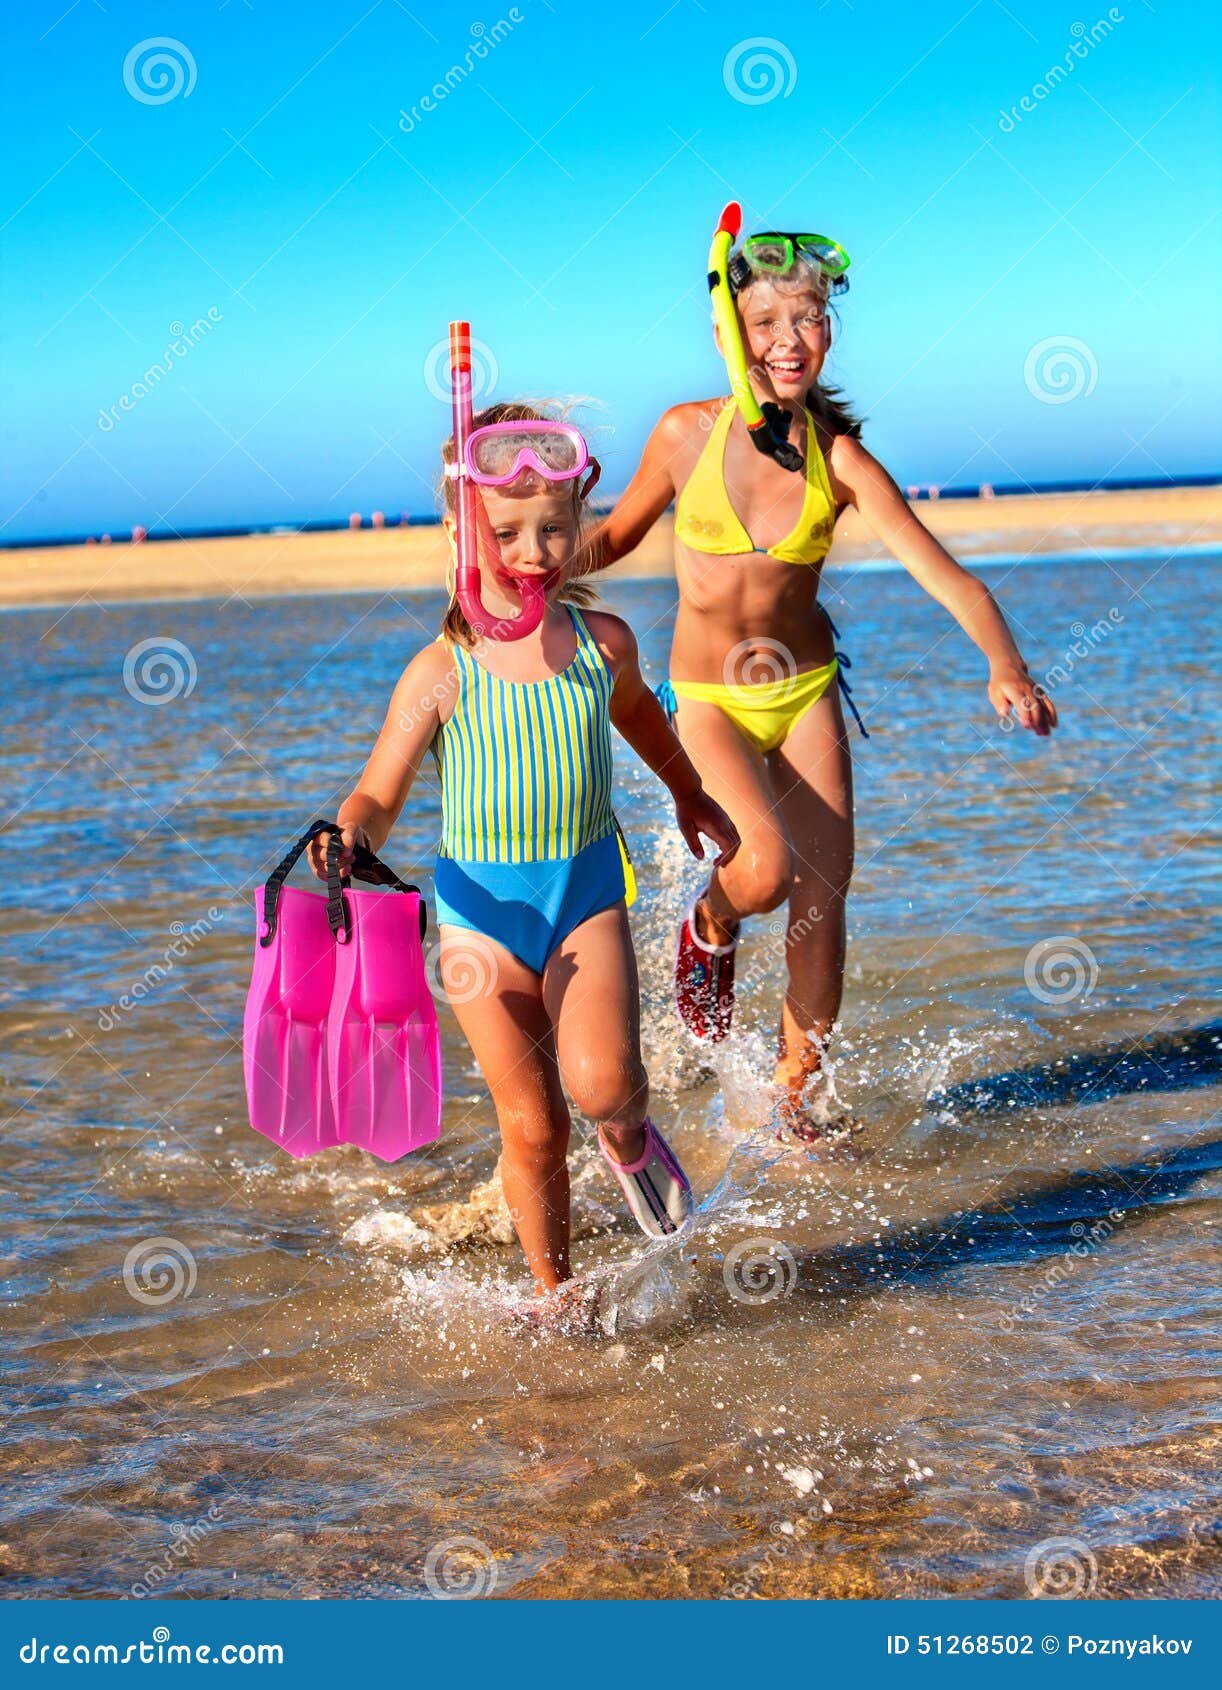 с детьми голым на пляж фото 80